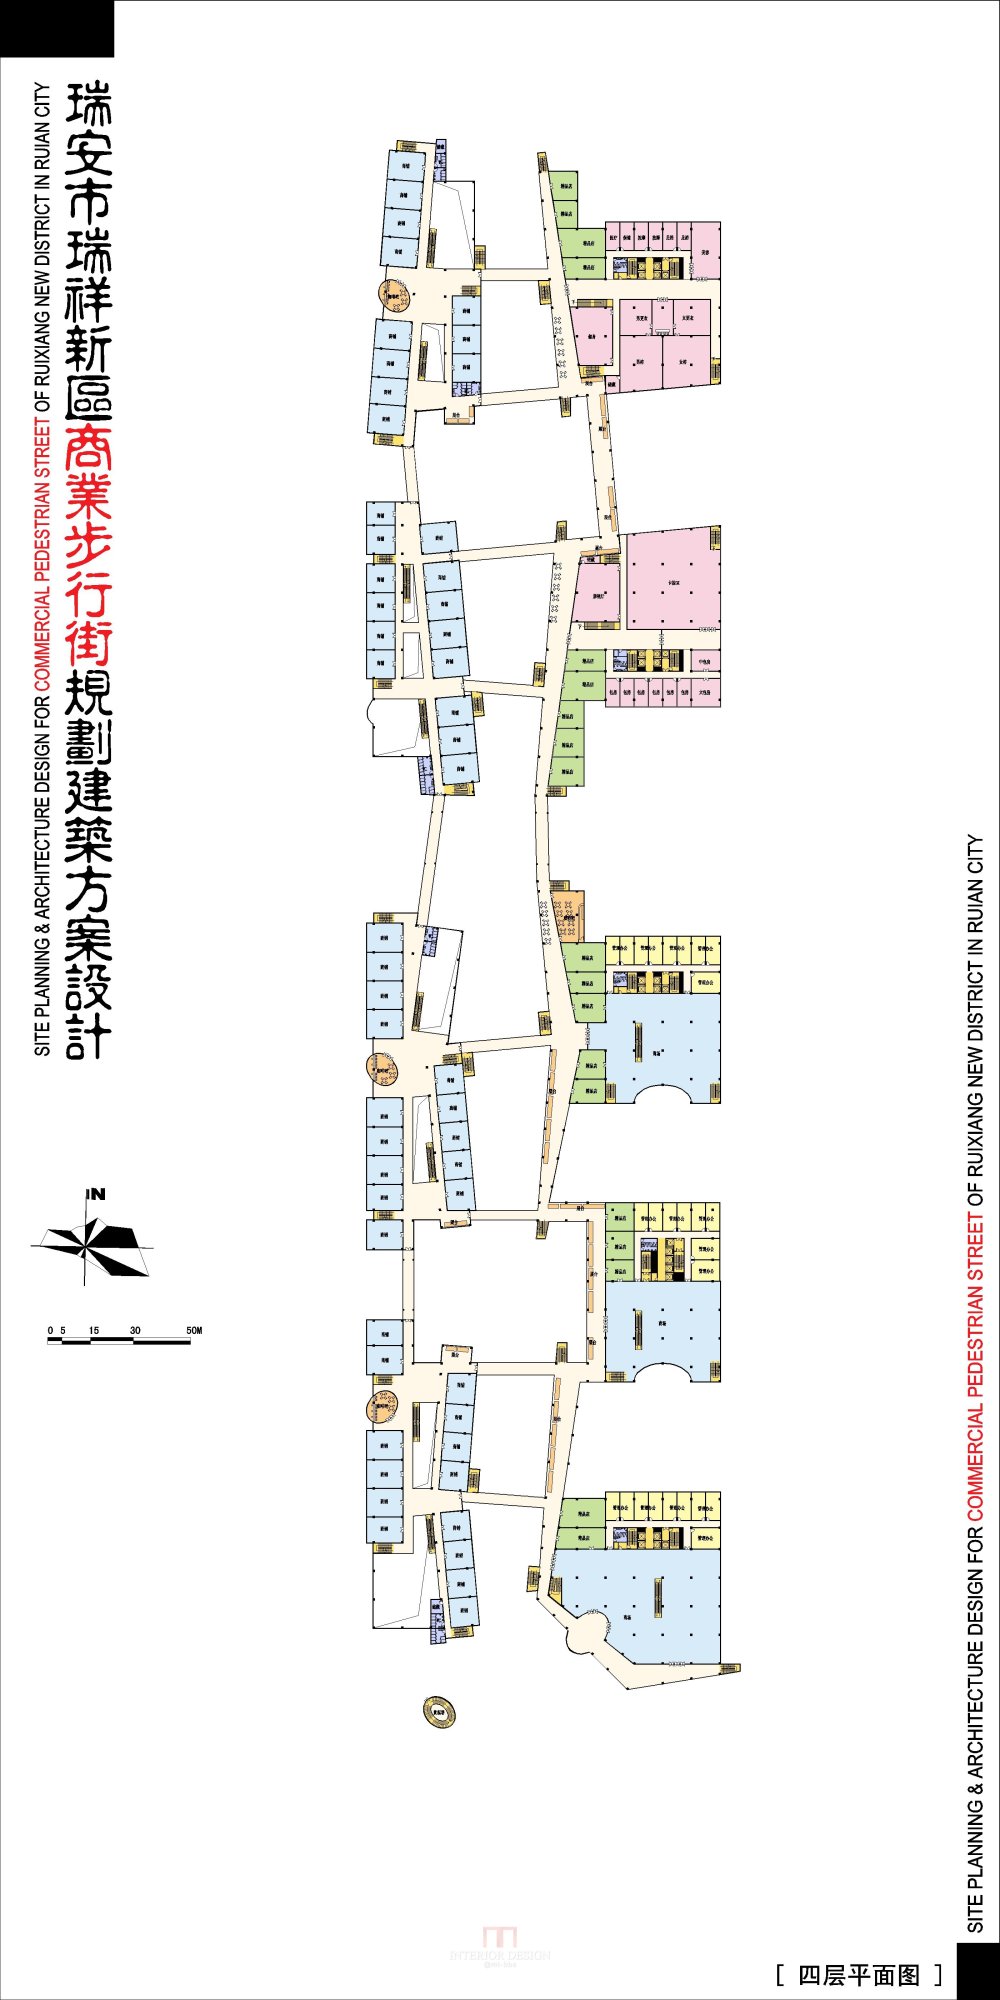 浙江瑞安新区商业步行街规划建筑设计方案_4-06瑞安商业街-四层平面图.jpg